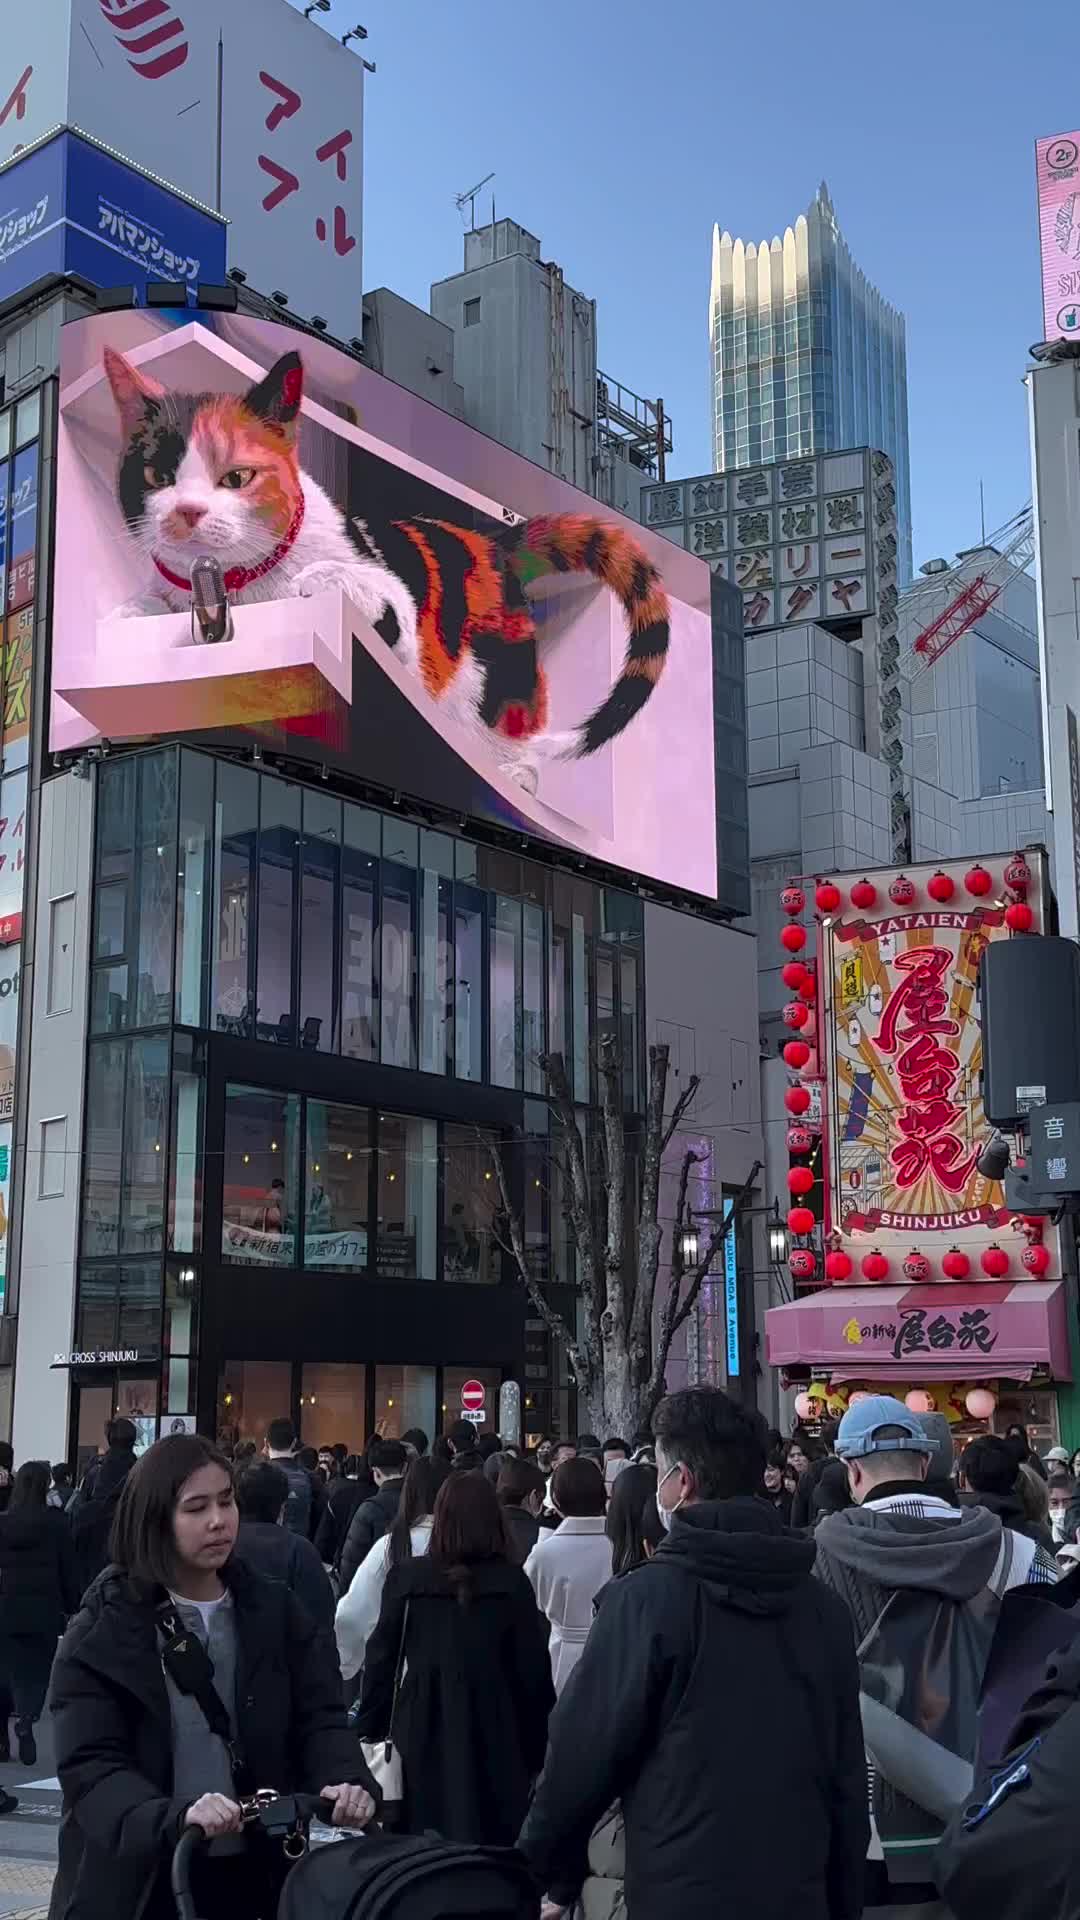 Giant 3D Calico Cat at Shinjuku Station, Tokyo